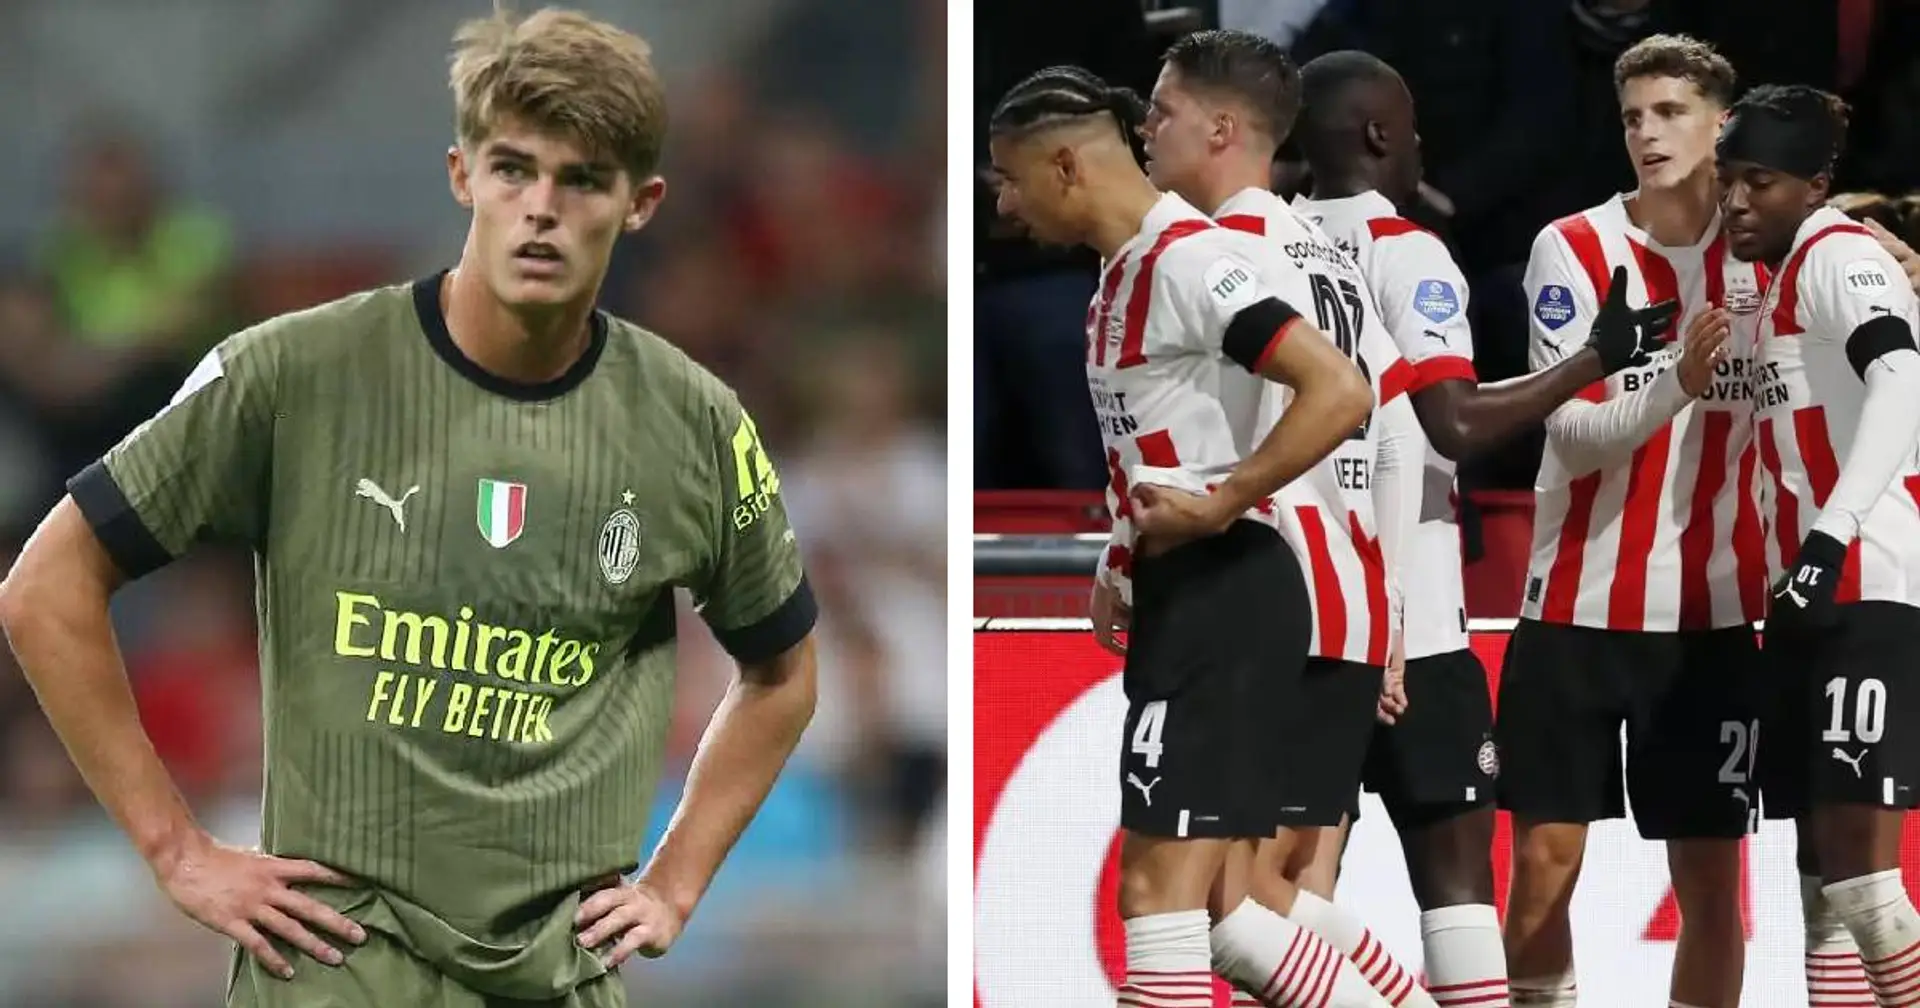 Le pagelle dei giocatori del Milan dopo l'amichevole contro il PSV: De Ketelaere non brilla